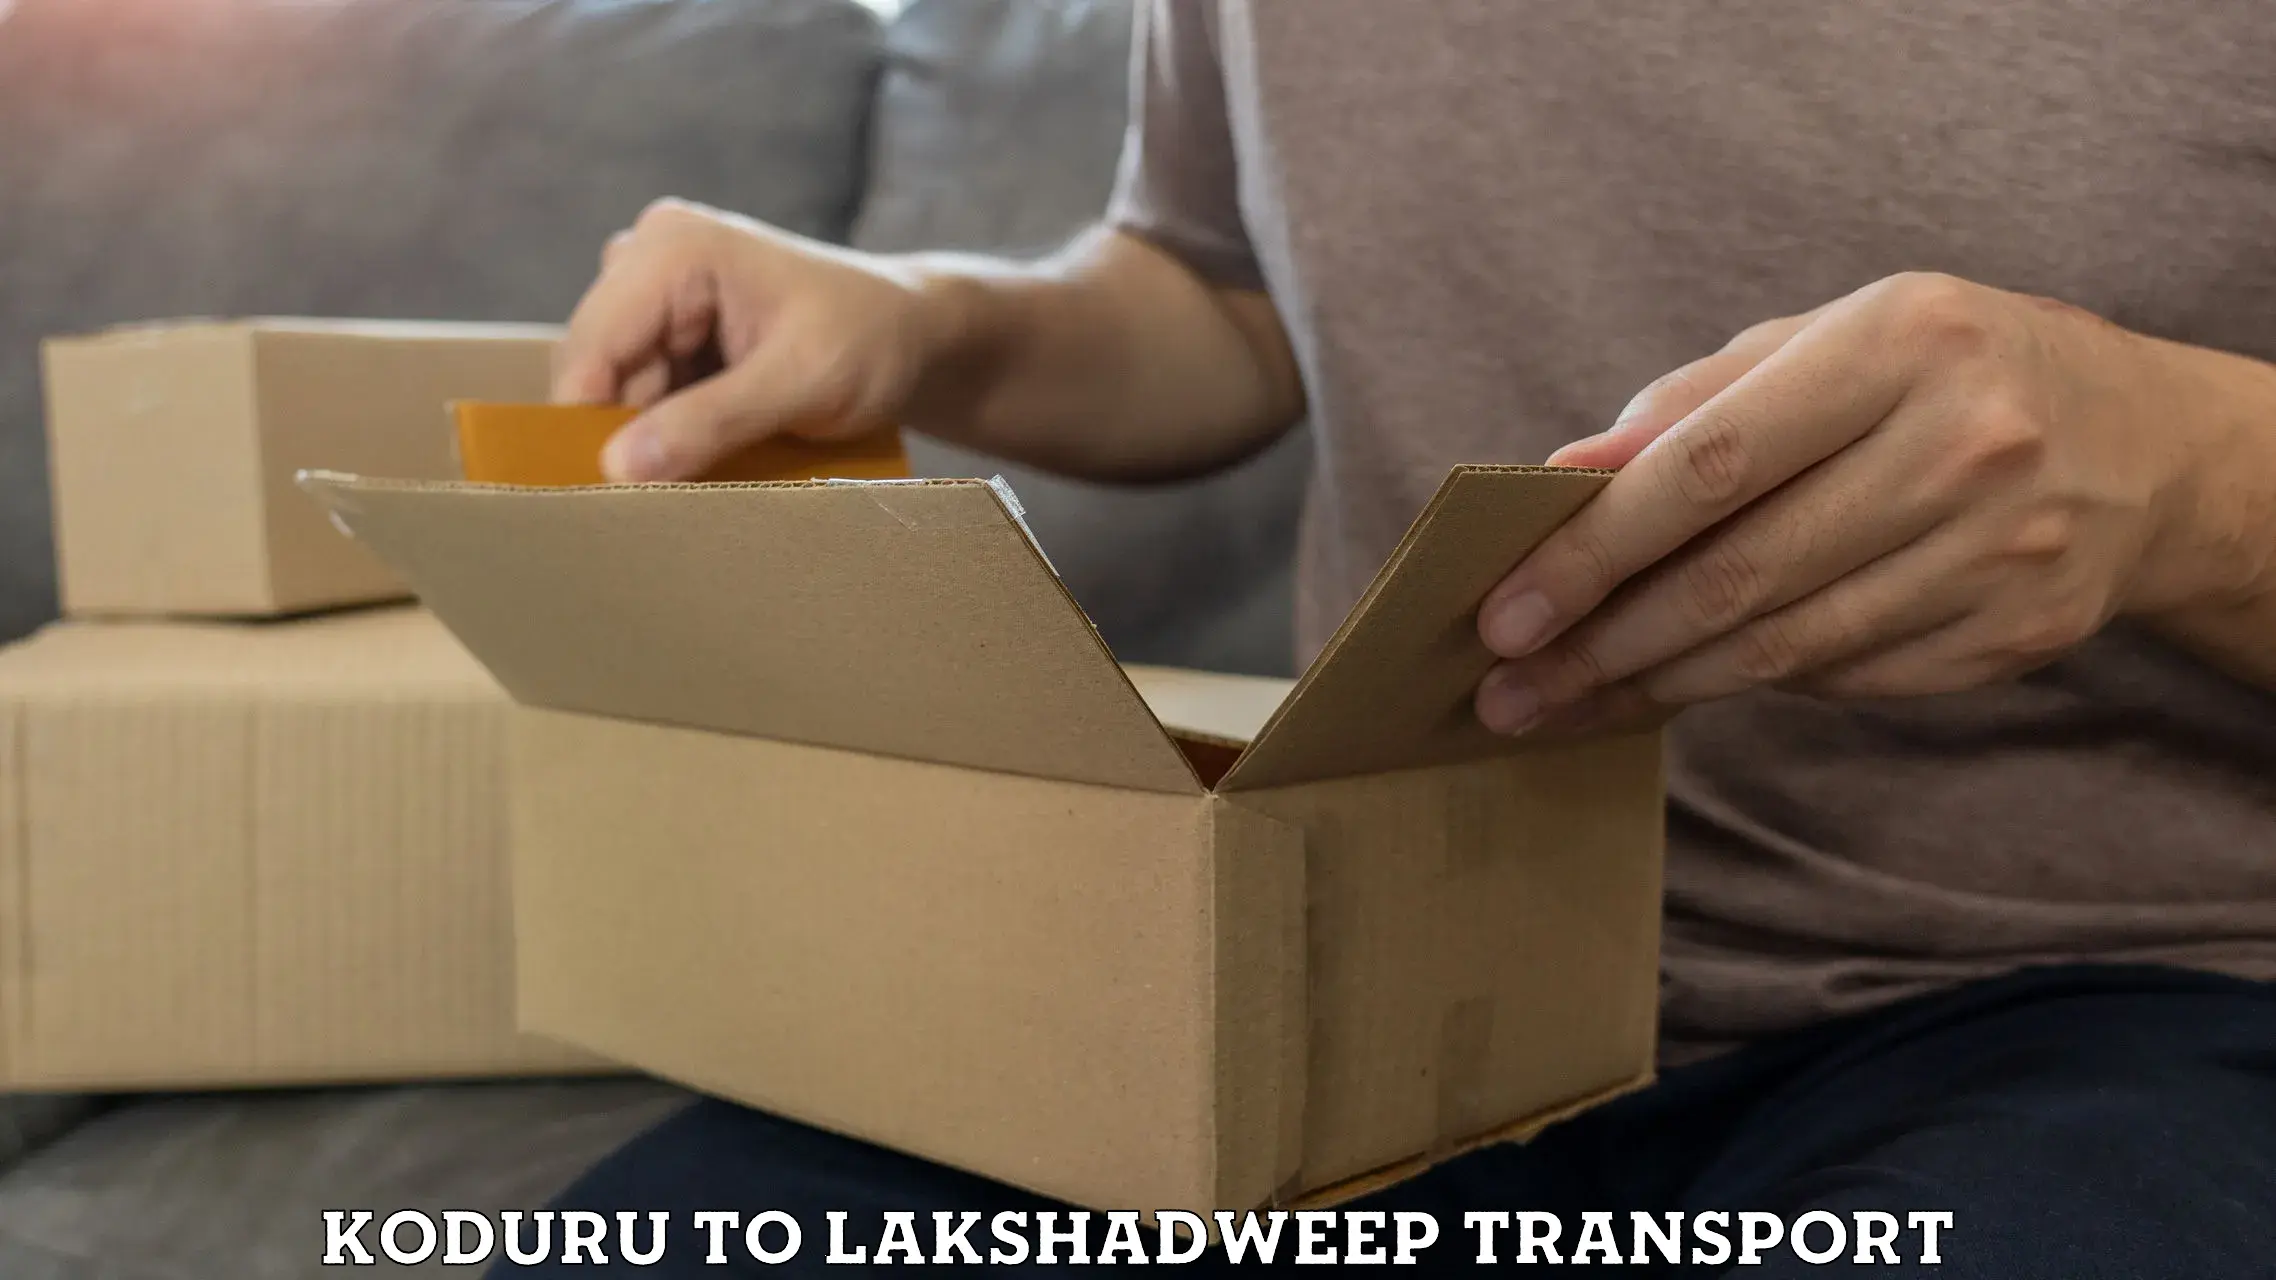 Transport in sharing Koduru to Lakshadweep